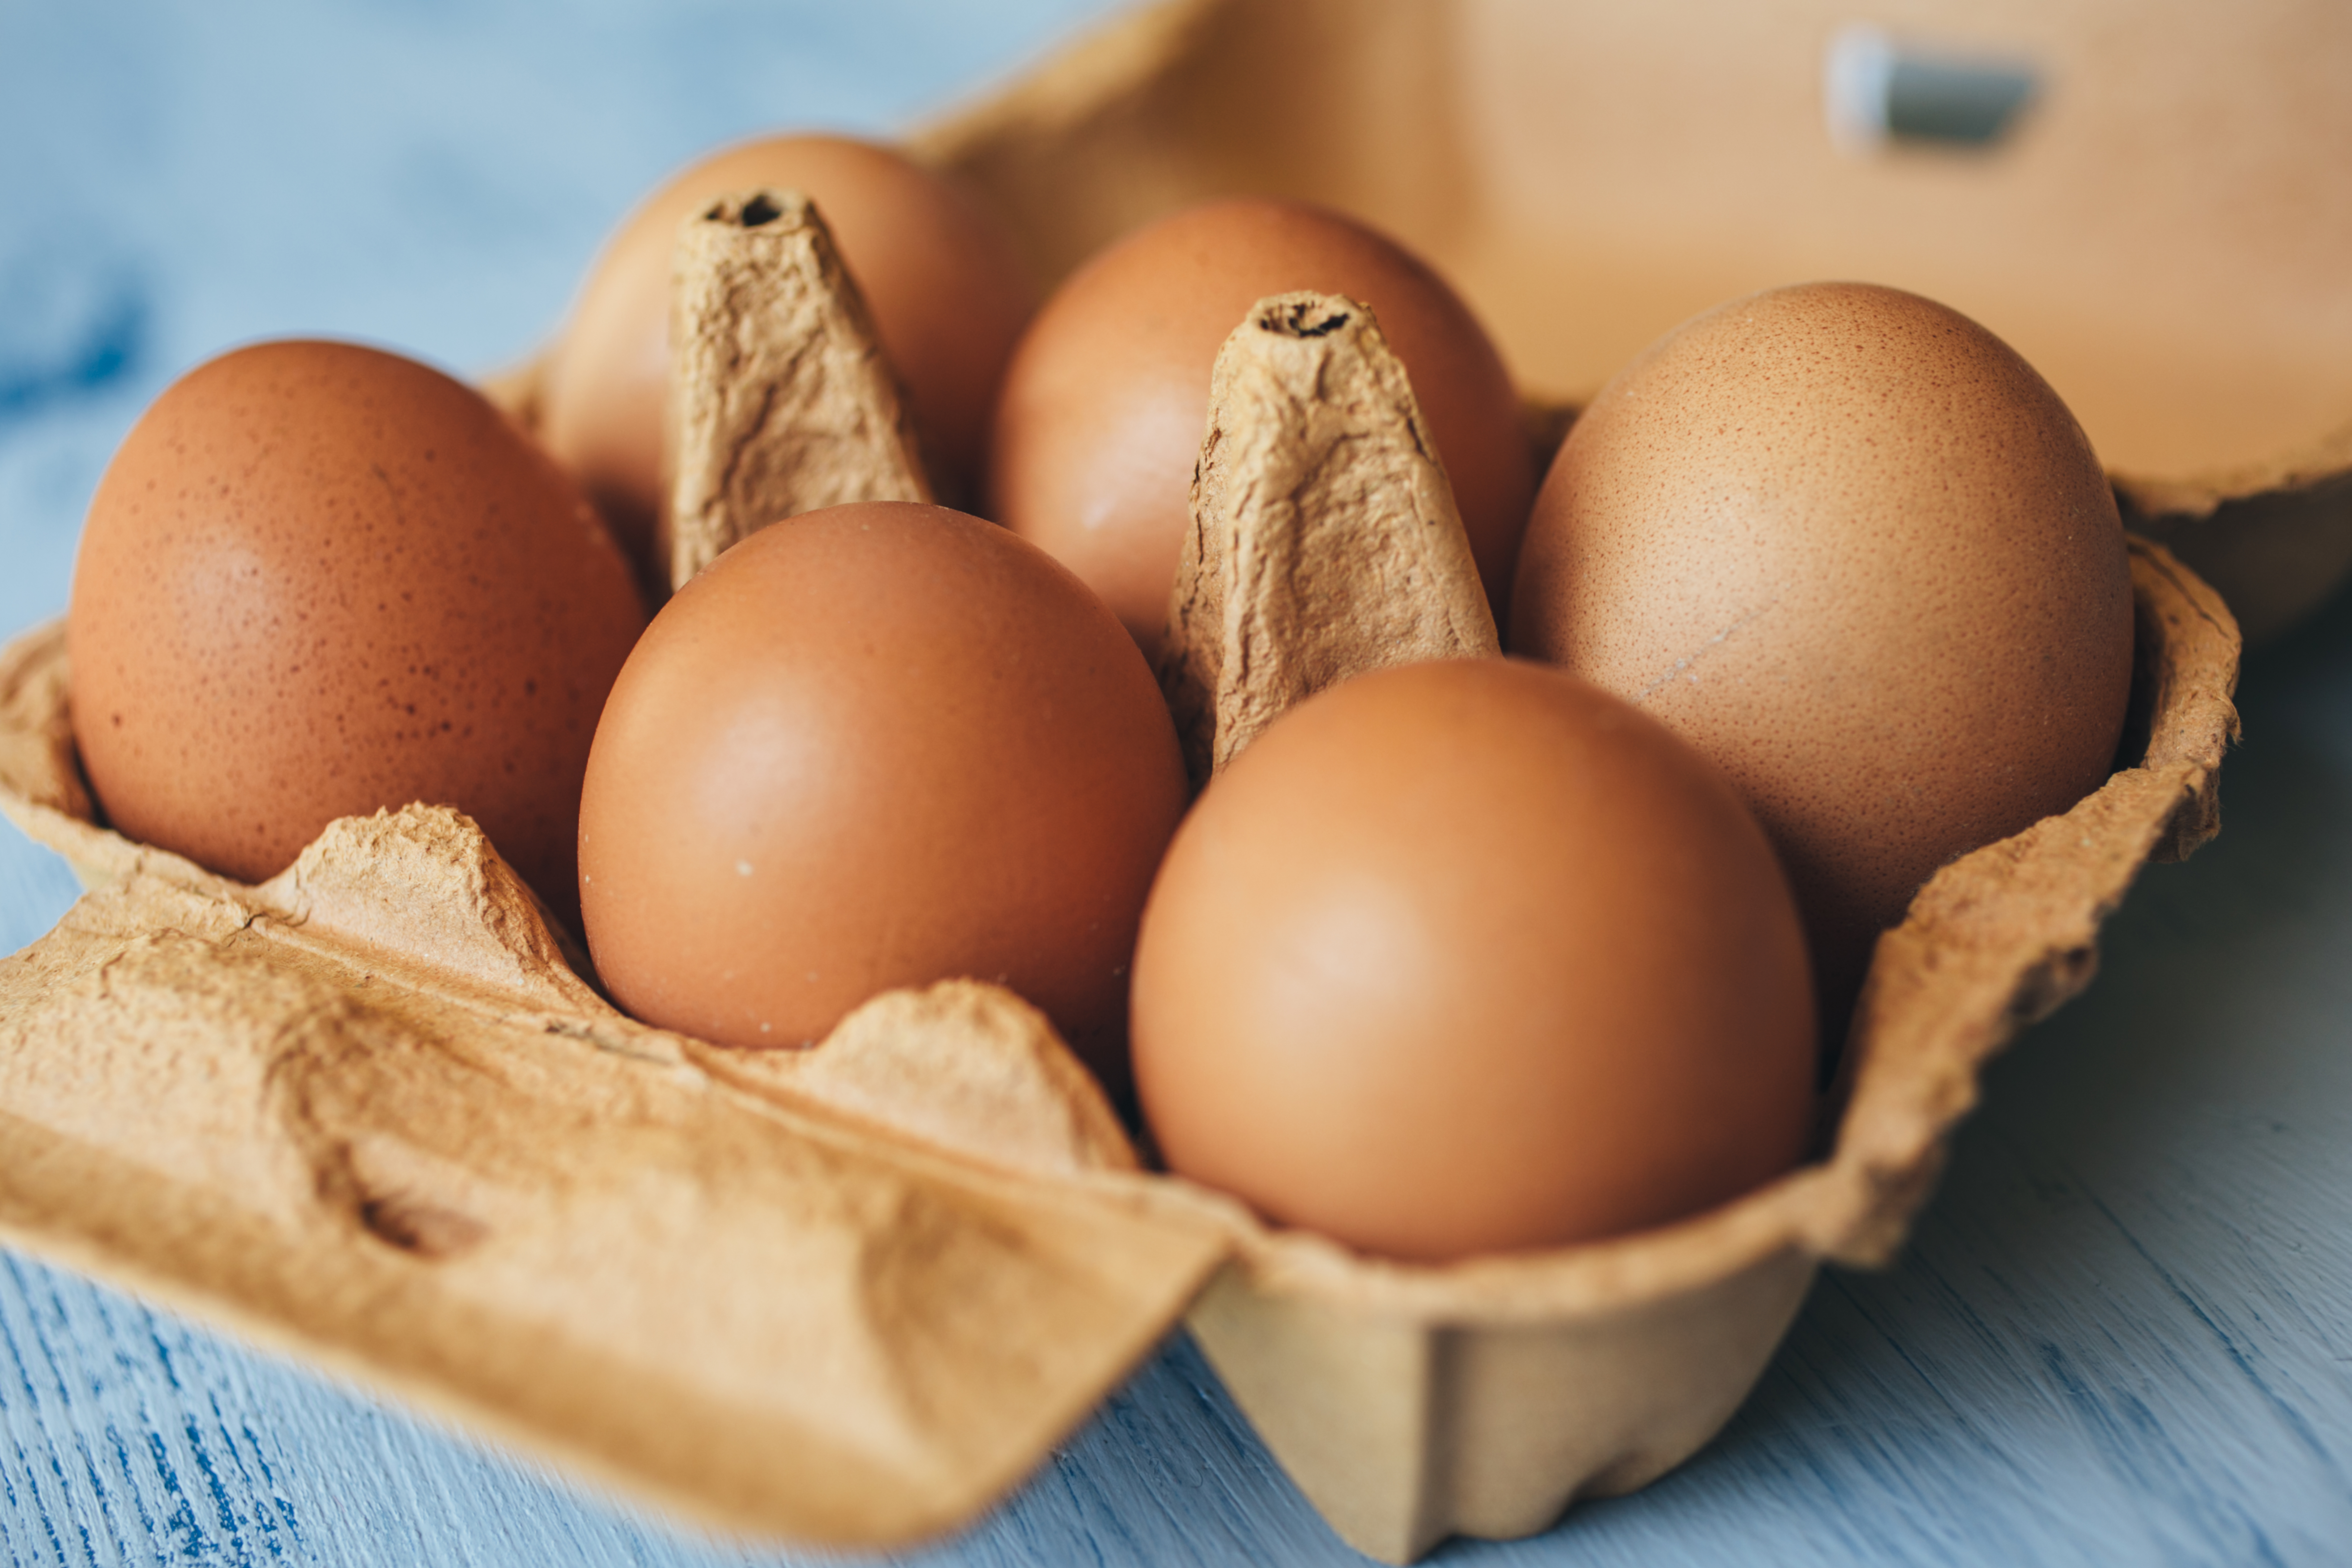 Cómo identificar huevos frescos y almacenarlos adecuadamente